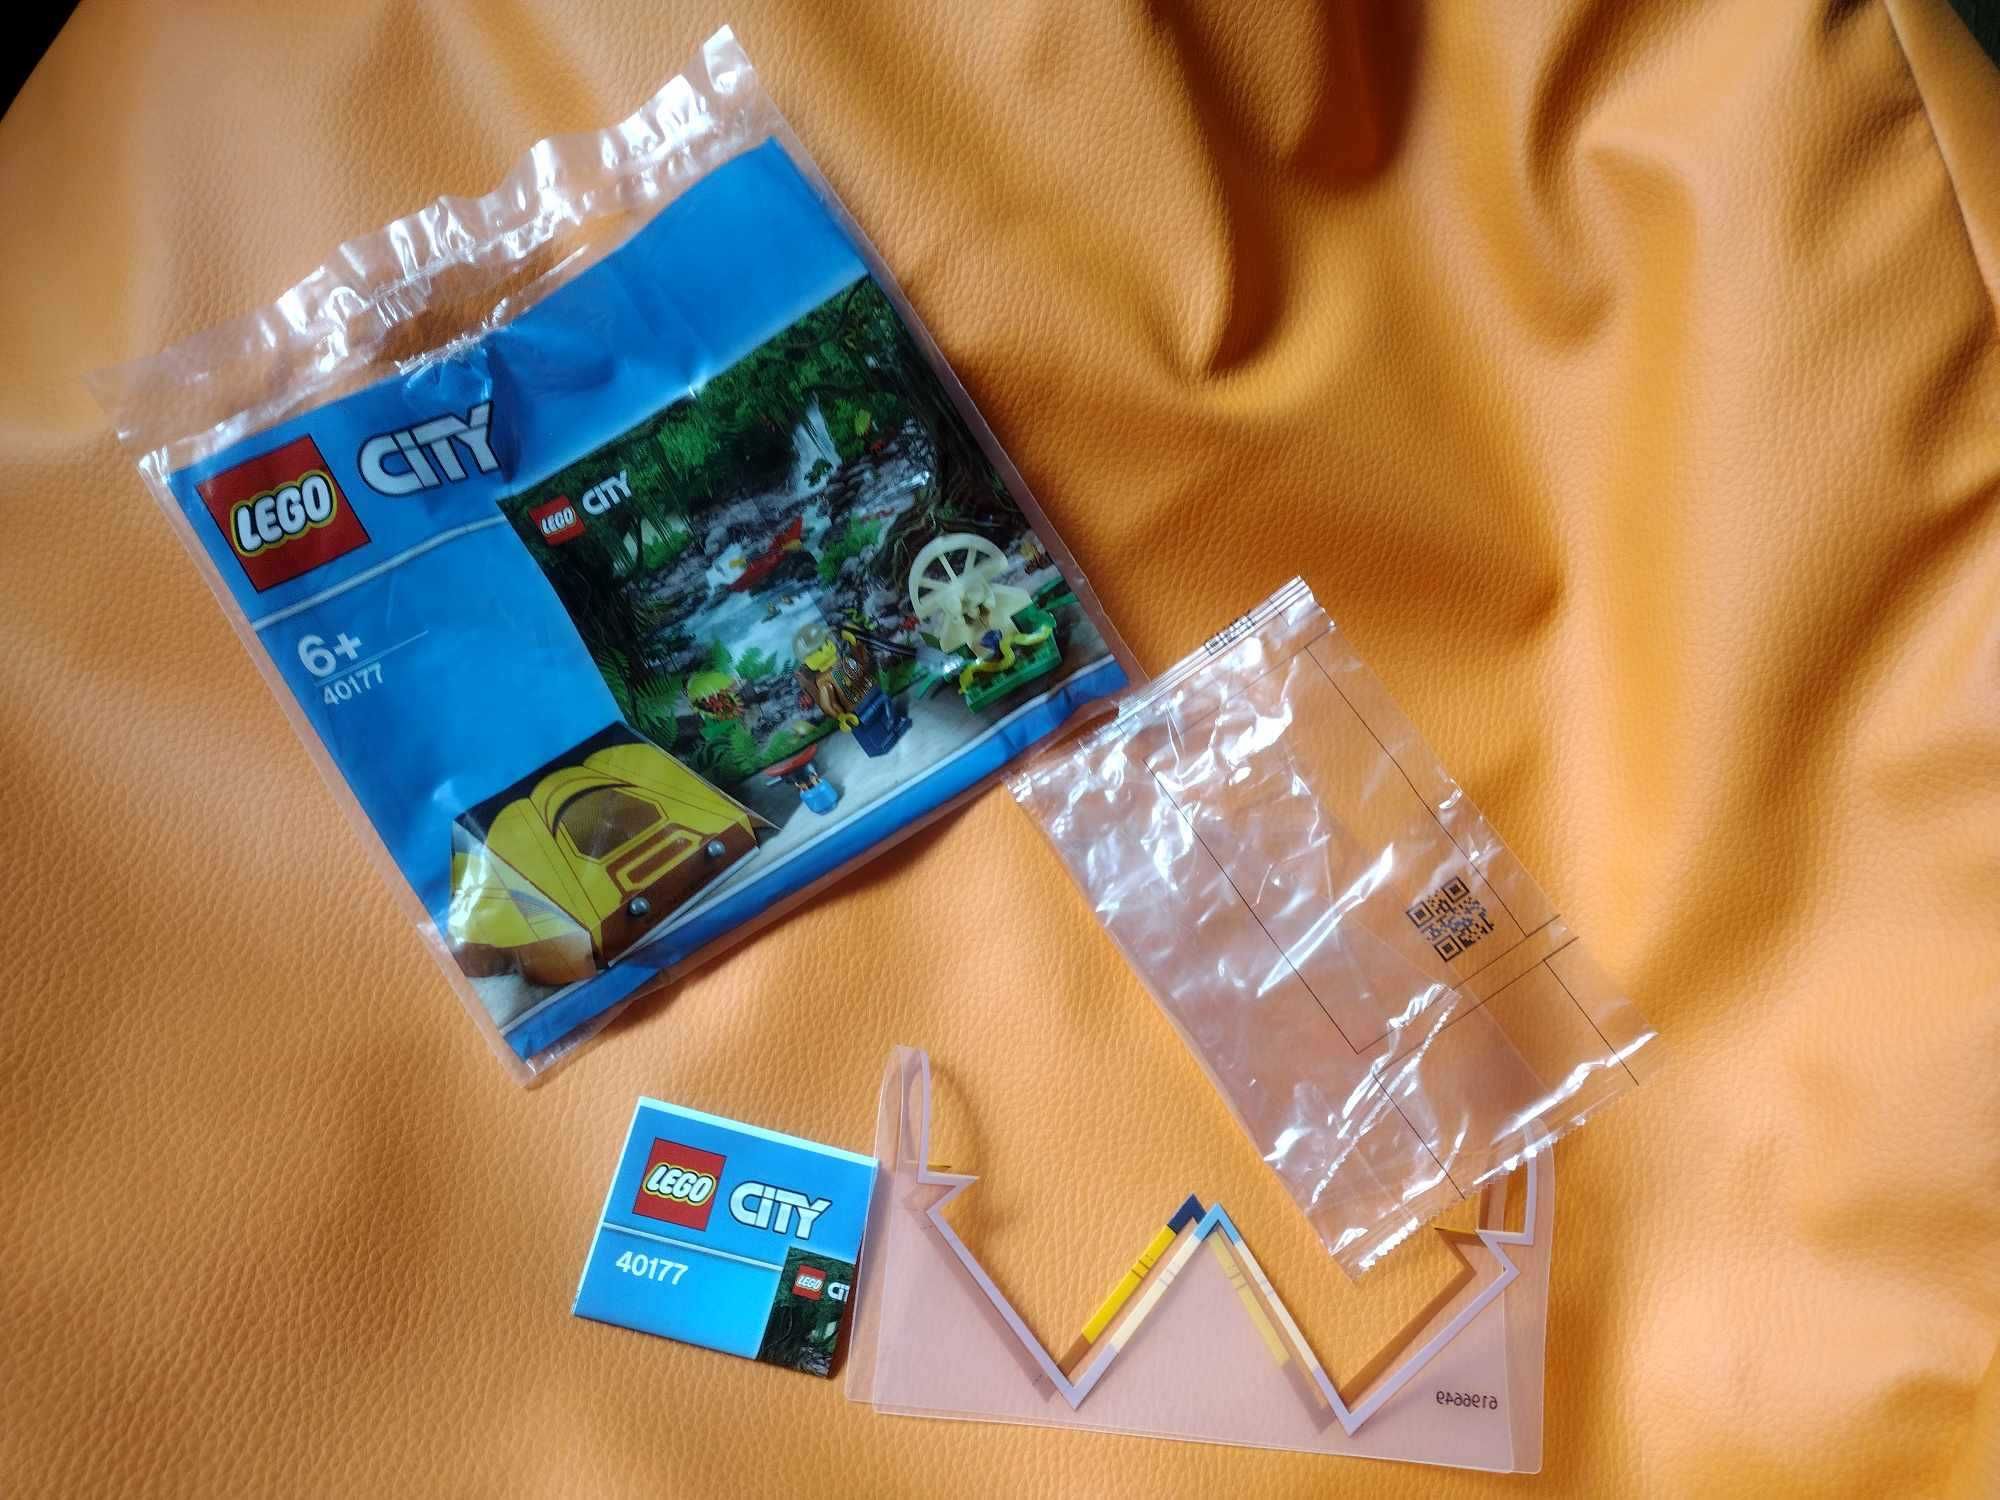 LEGO CITY 40177 - instrukcja, opakowanie i wytłoczka